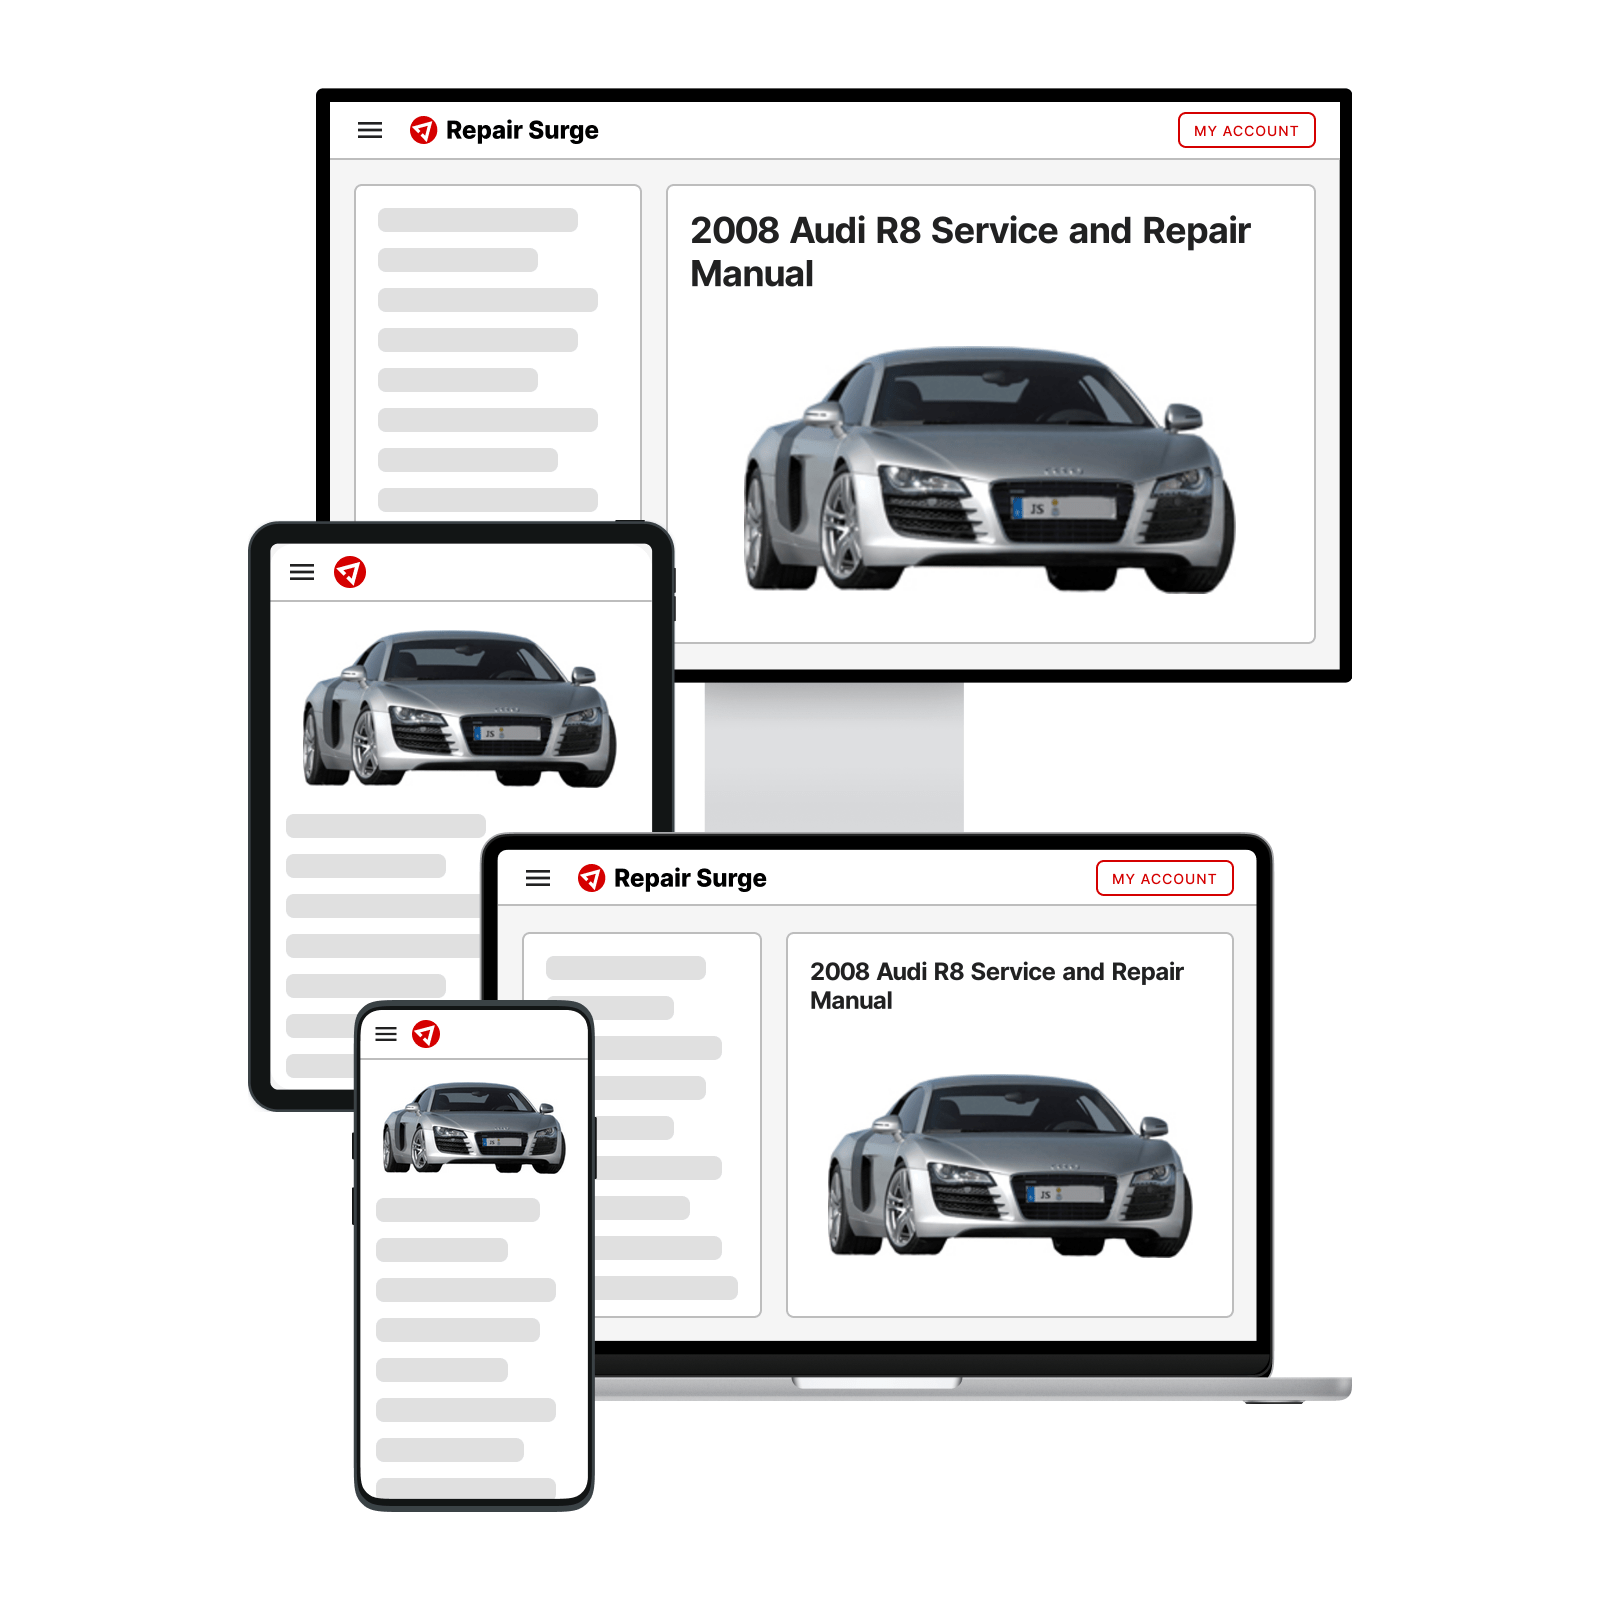 2008 Audi R8 service and repair manual hero image